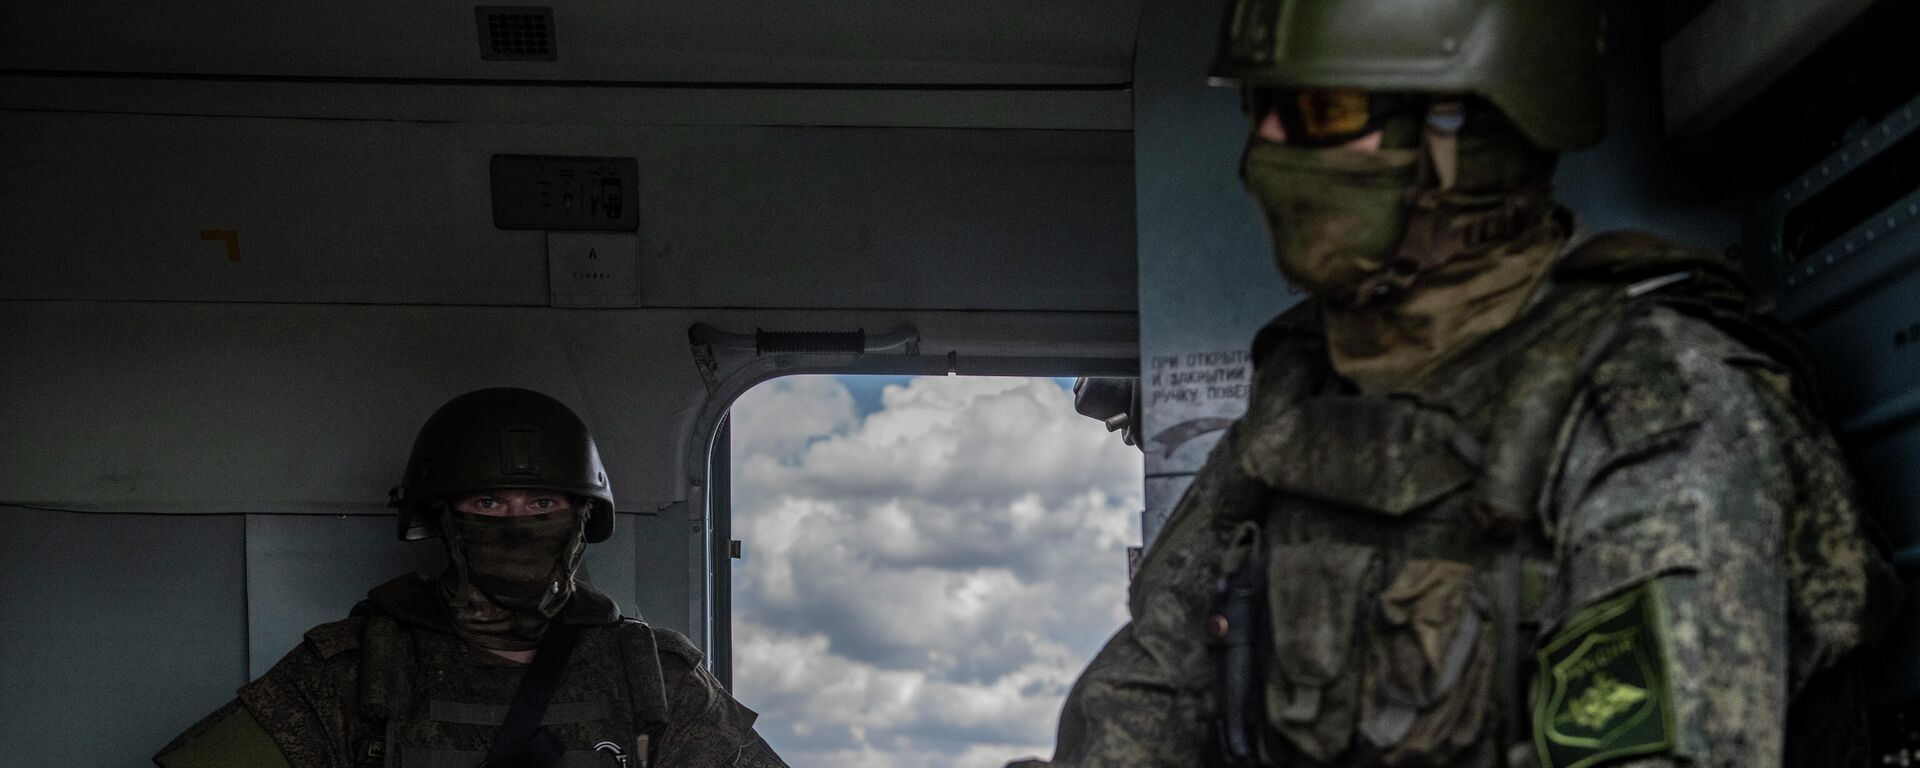 Военнослужащие в кабине вертолета Ми-8МТВ на полевом аэродроме в зоне проведения специальной военной операции. - Sputnik Кыргызстан, 1920, 19.07.2022